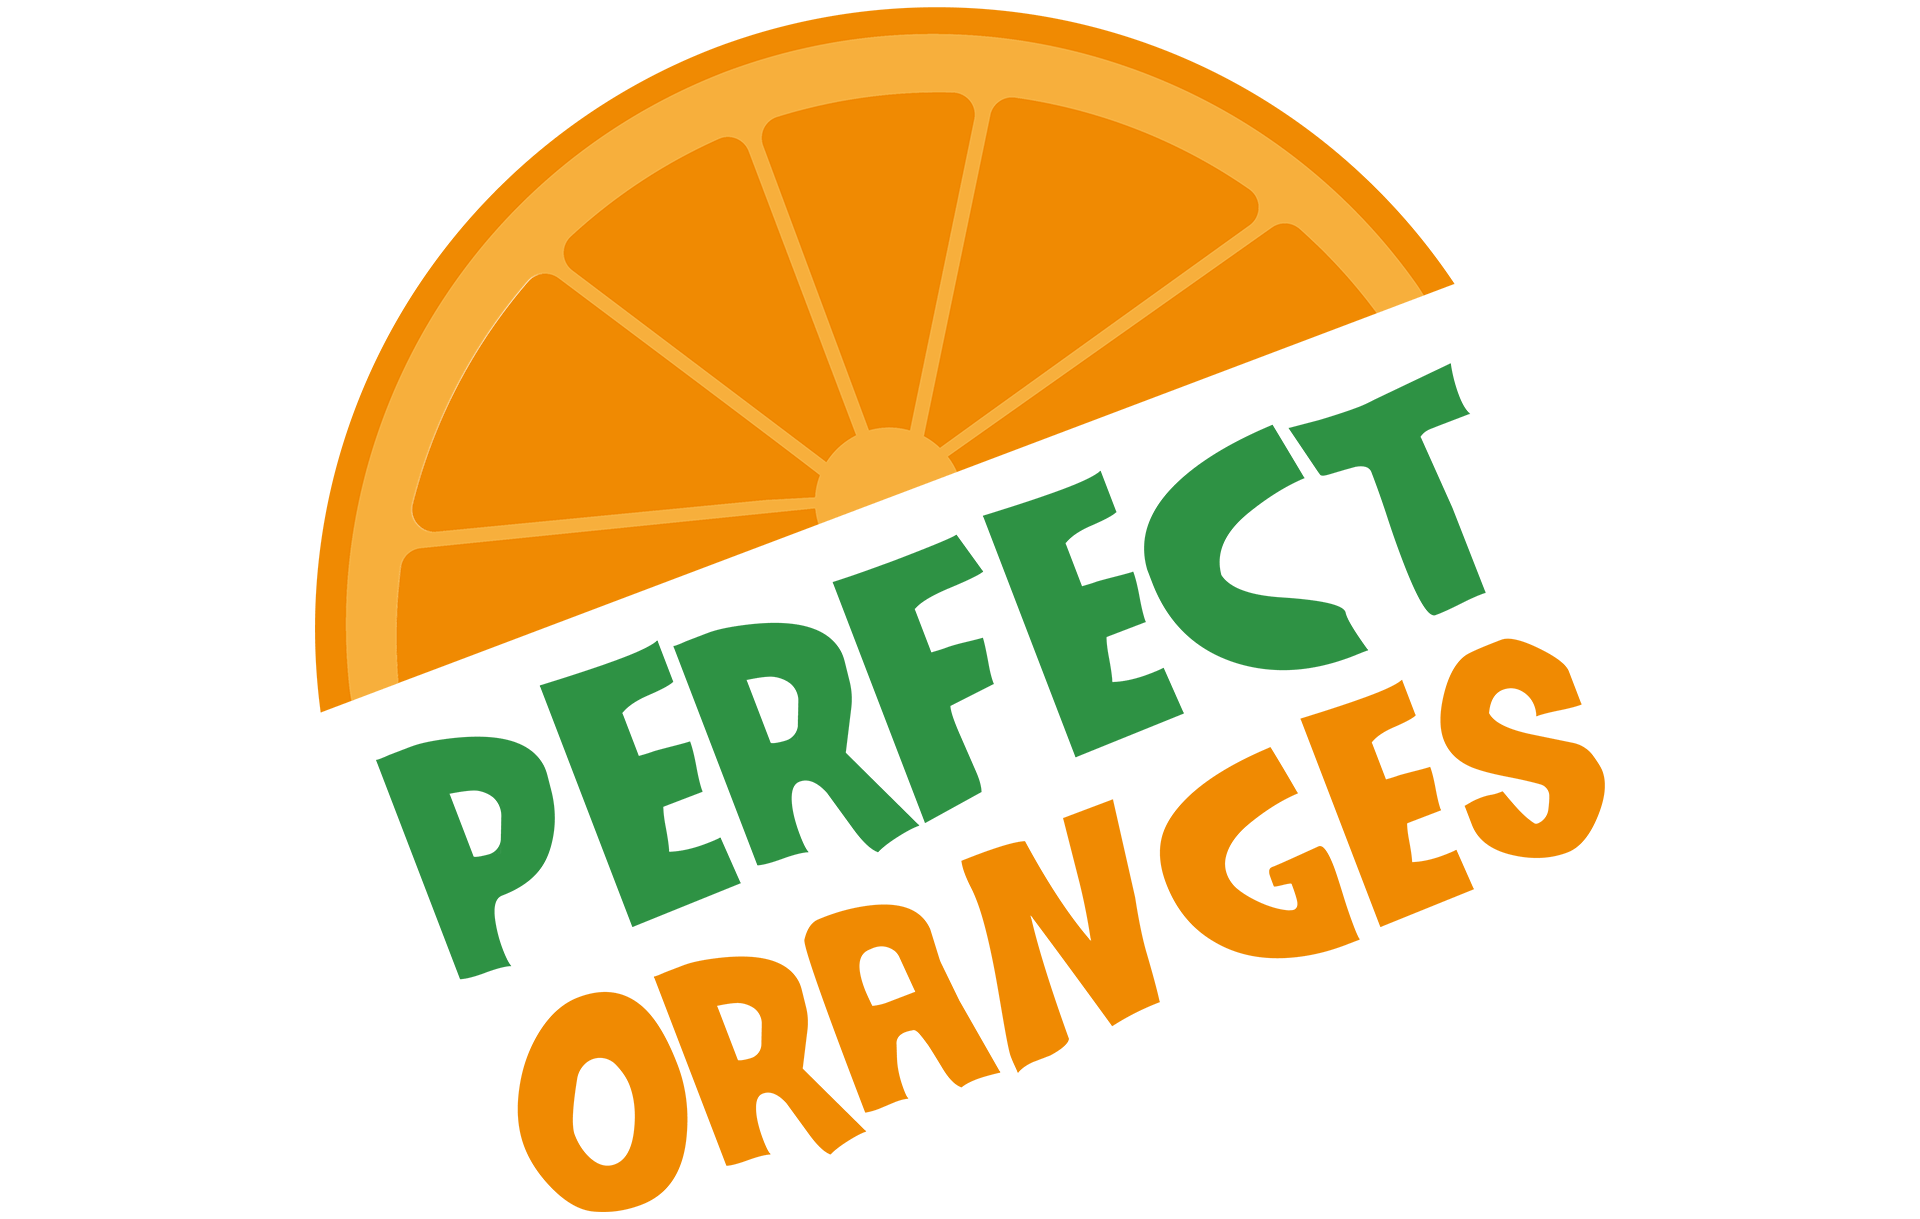 perfect oranges orange slice logo design